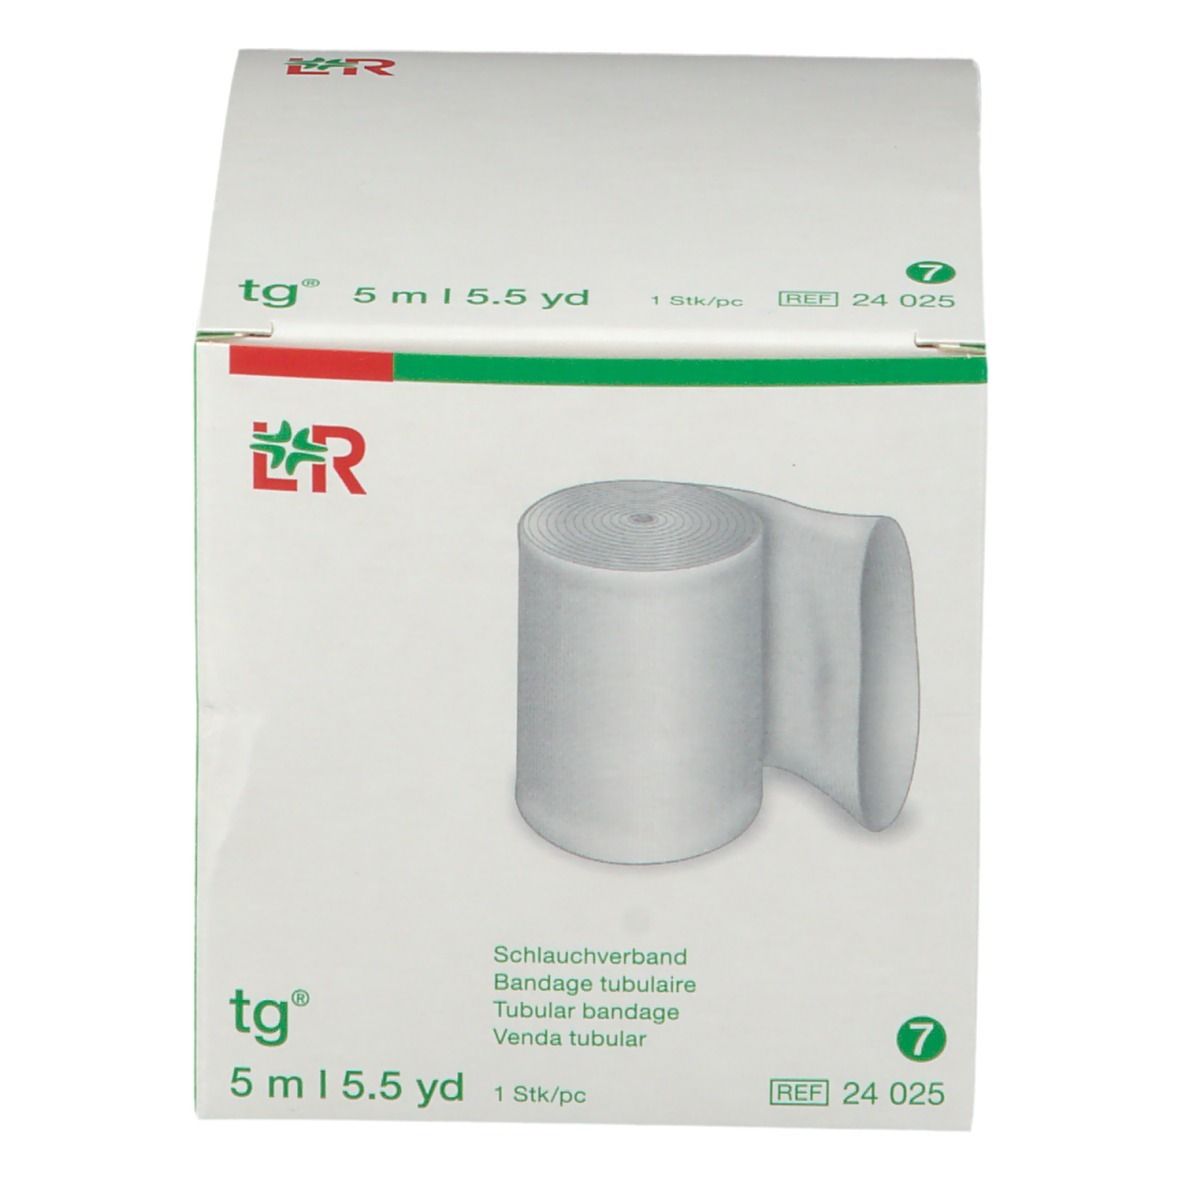 TG Bandage Tubulaire 7cm x 5m 24025